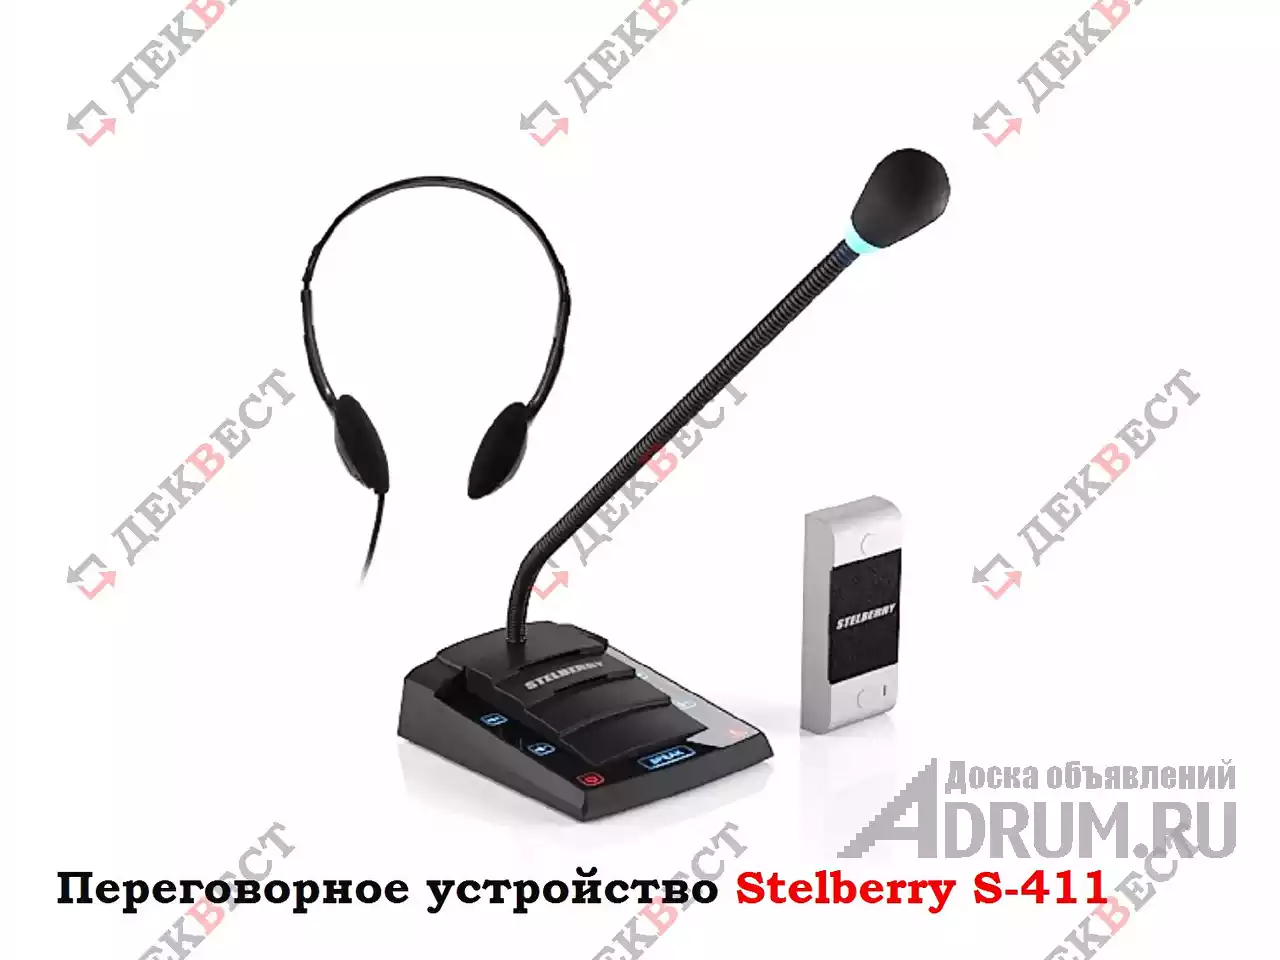 Переговорное устройство Stelberry S-411. в Москвe